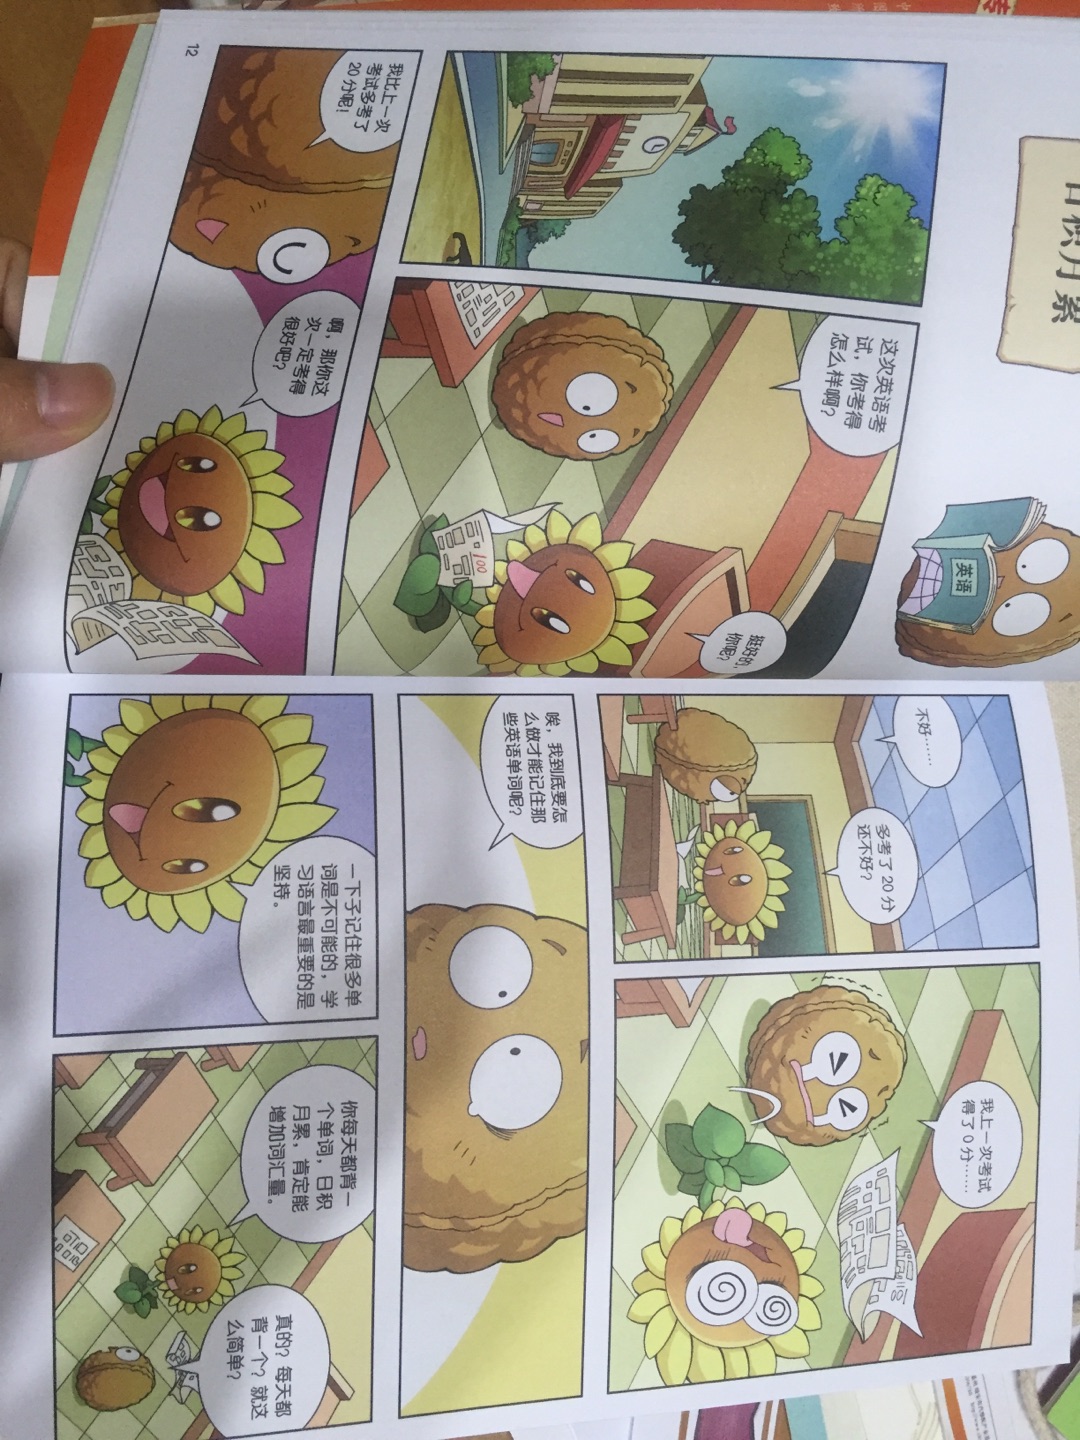 内容很有趣，小孩子原本就喜欢植物大战僵尸，看到这书爱不释手，就是对于小小的孩子，可能还不能理解这漫画的笑点